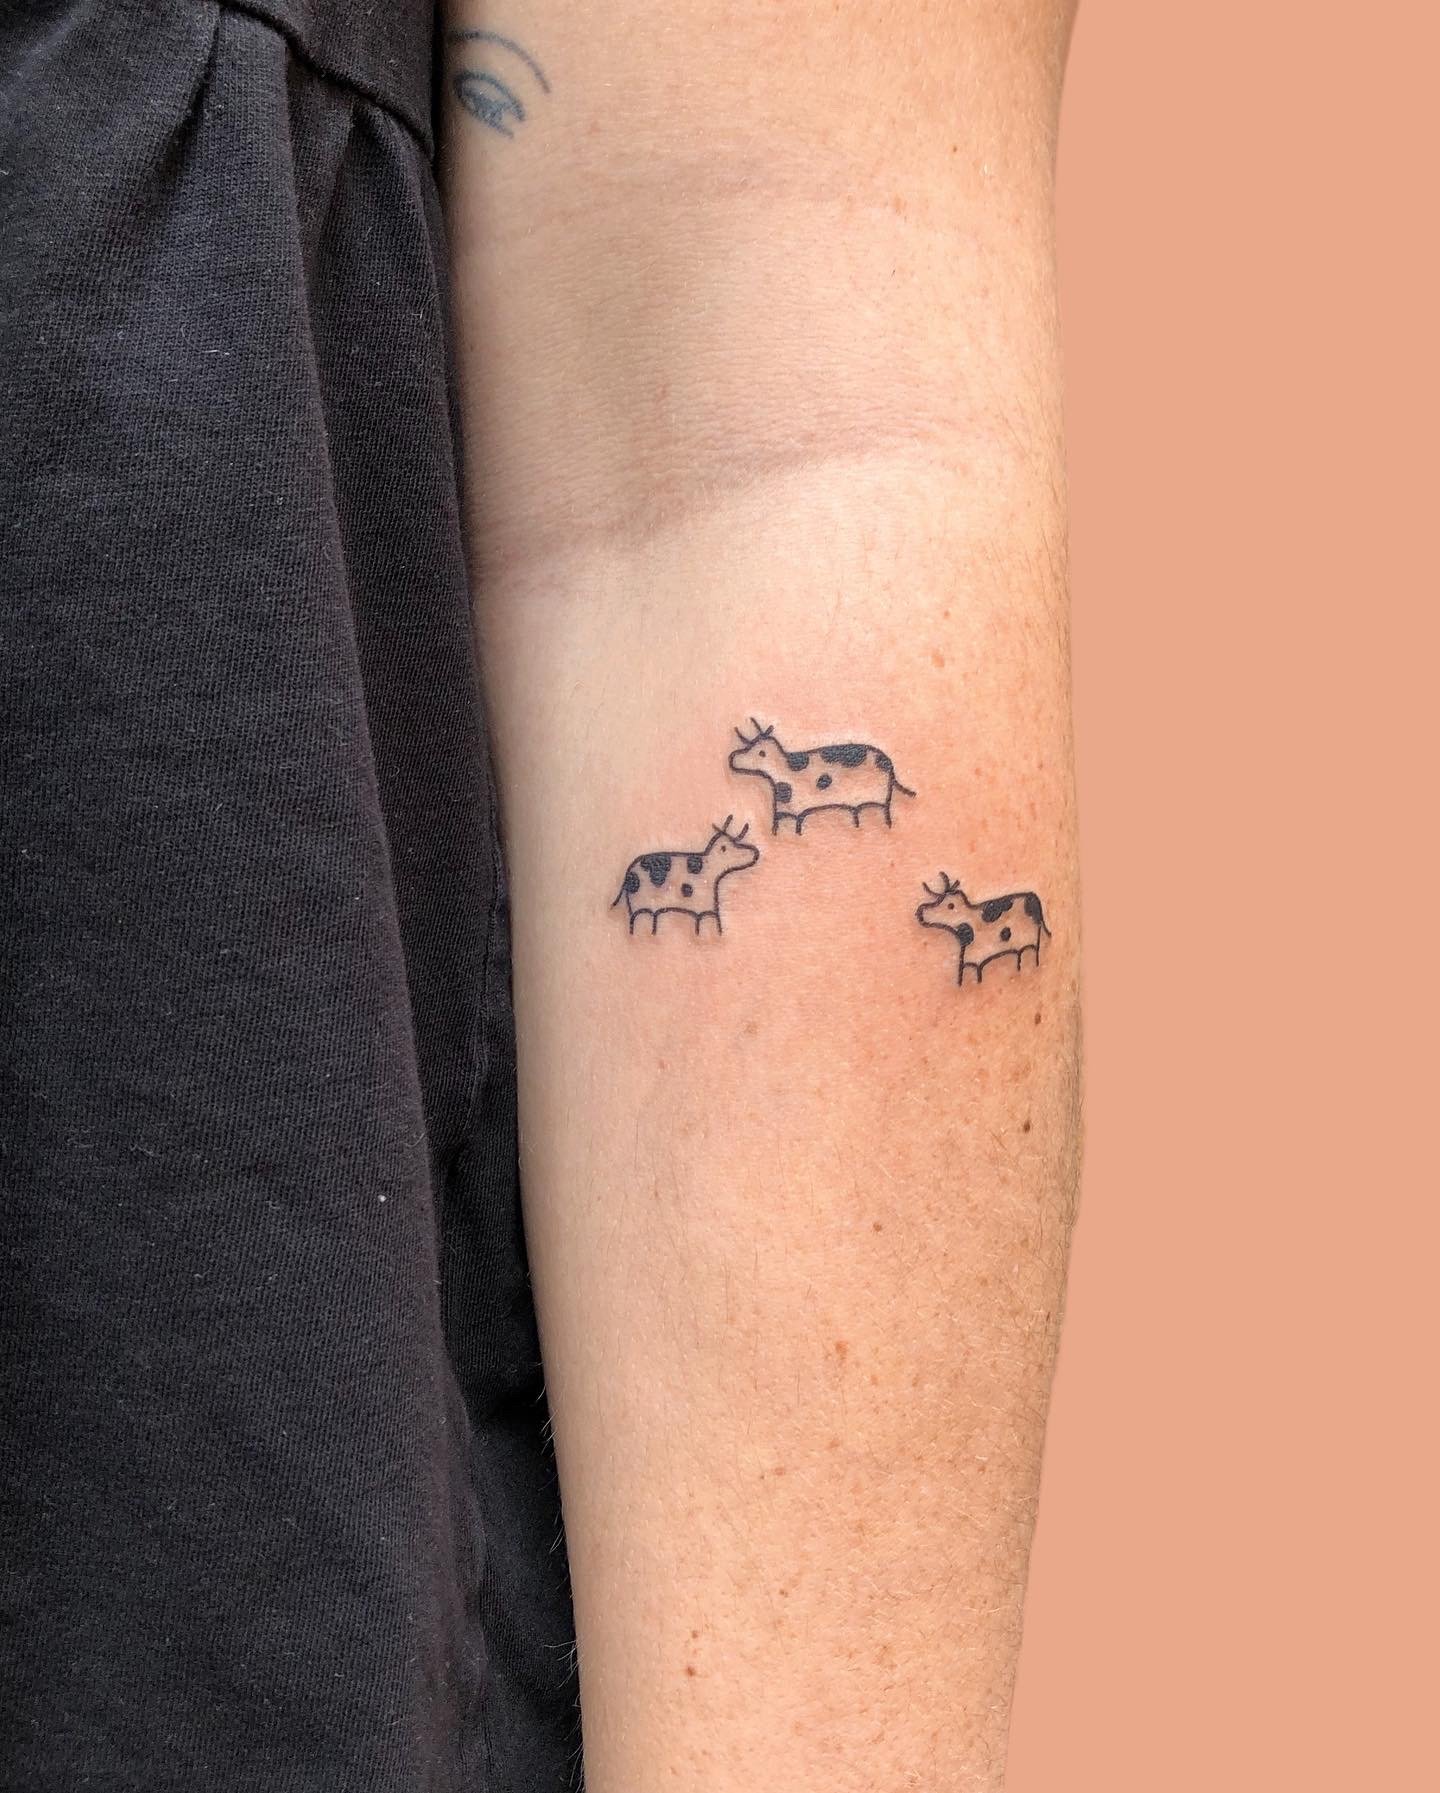 Minimal cow tattoo by lazyfactory.JPG